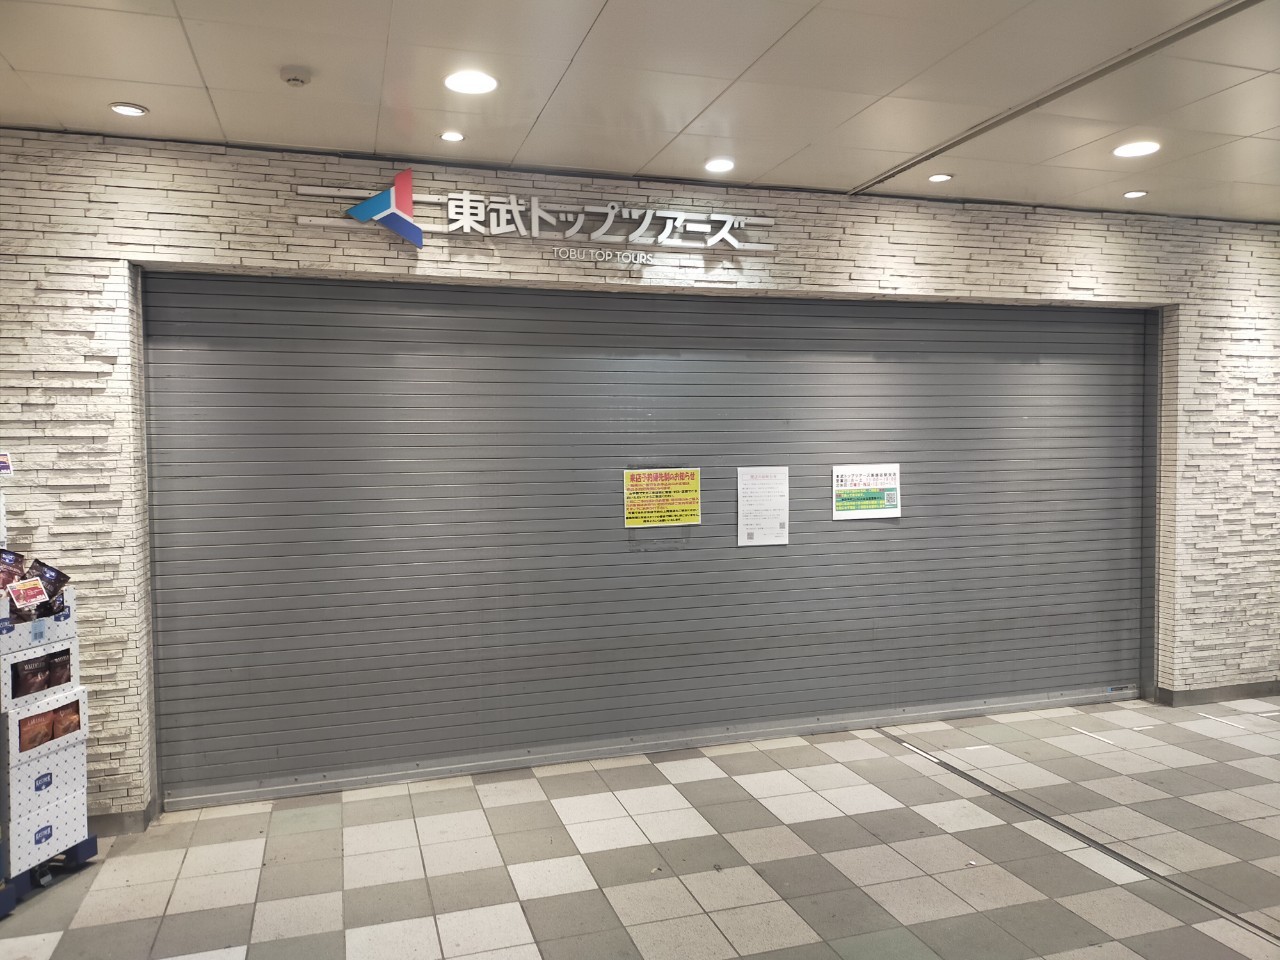 2023年12月29日、新越谷駅内の東武トップツアーズ新越谷駅支店が閉店するそうです【がやてっく閉店】